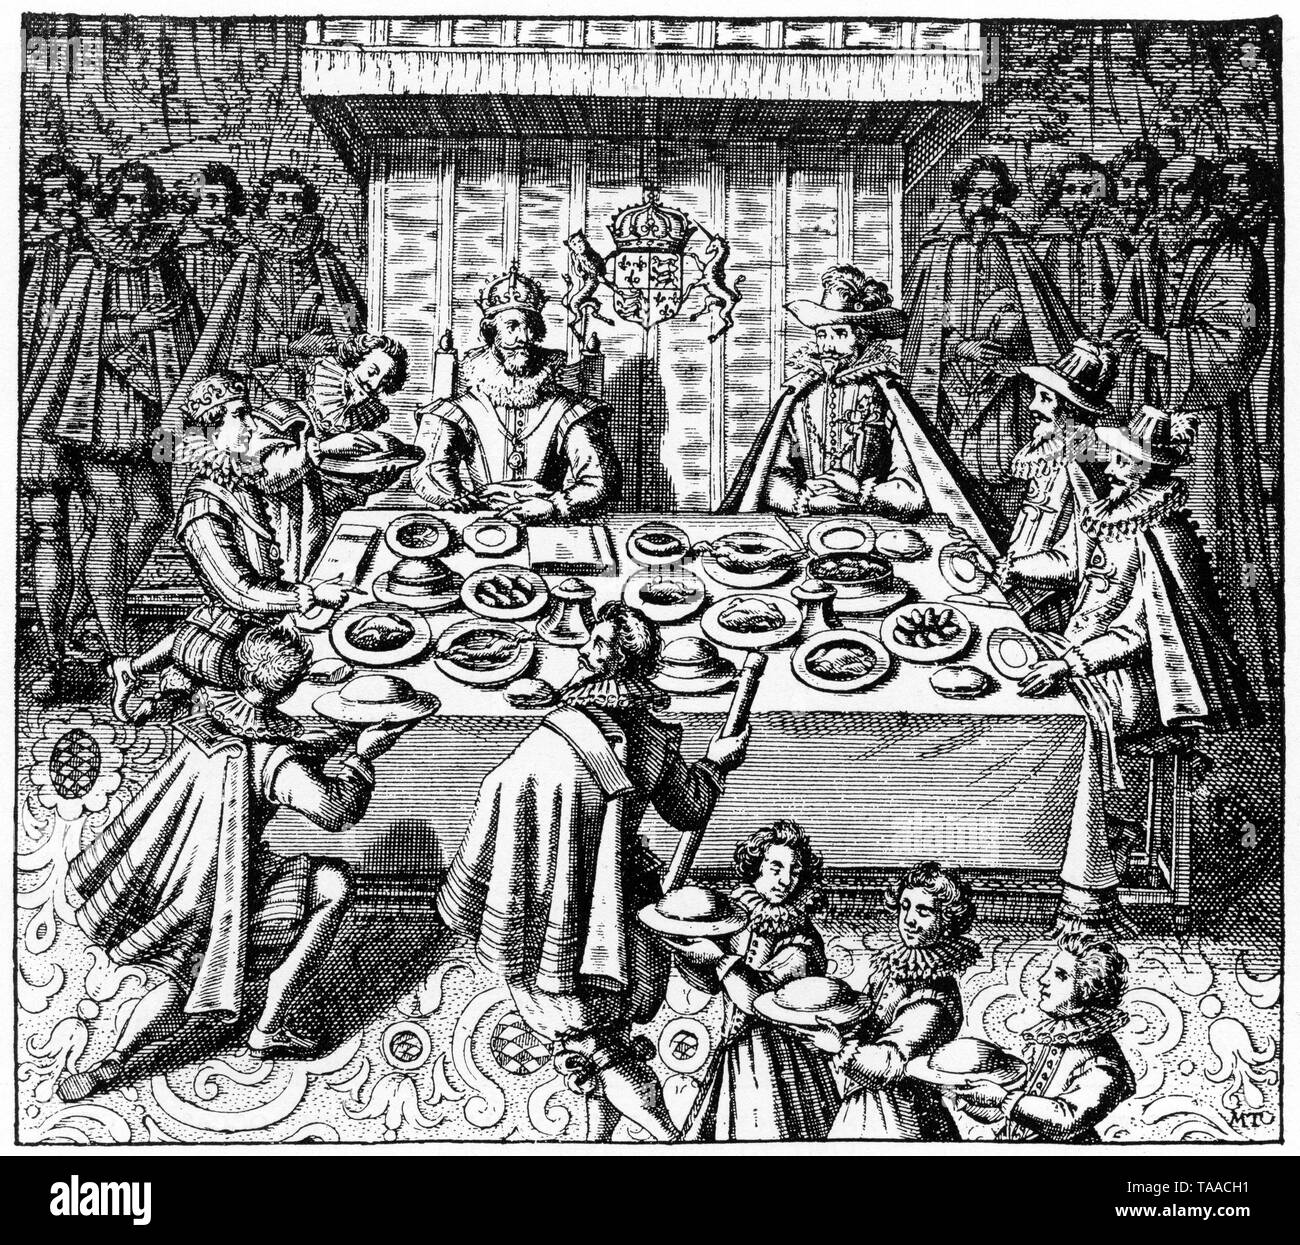 Le roi James I (1566-1625) se régalant avec les Espagnols Ambassadeur extraordinaire qui a accompagné le Prince Charles le futur roi Charles I (1600-1649) et George Villiers, 1 duc de Buckingham KG (1592 -1628) à son retour de Madrid, 1623. Banque D'Images